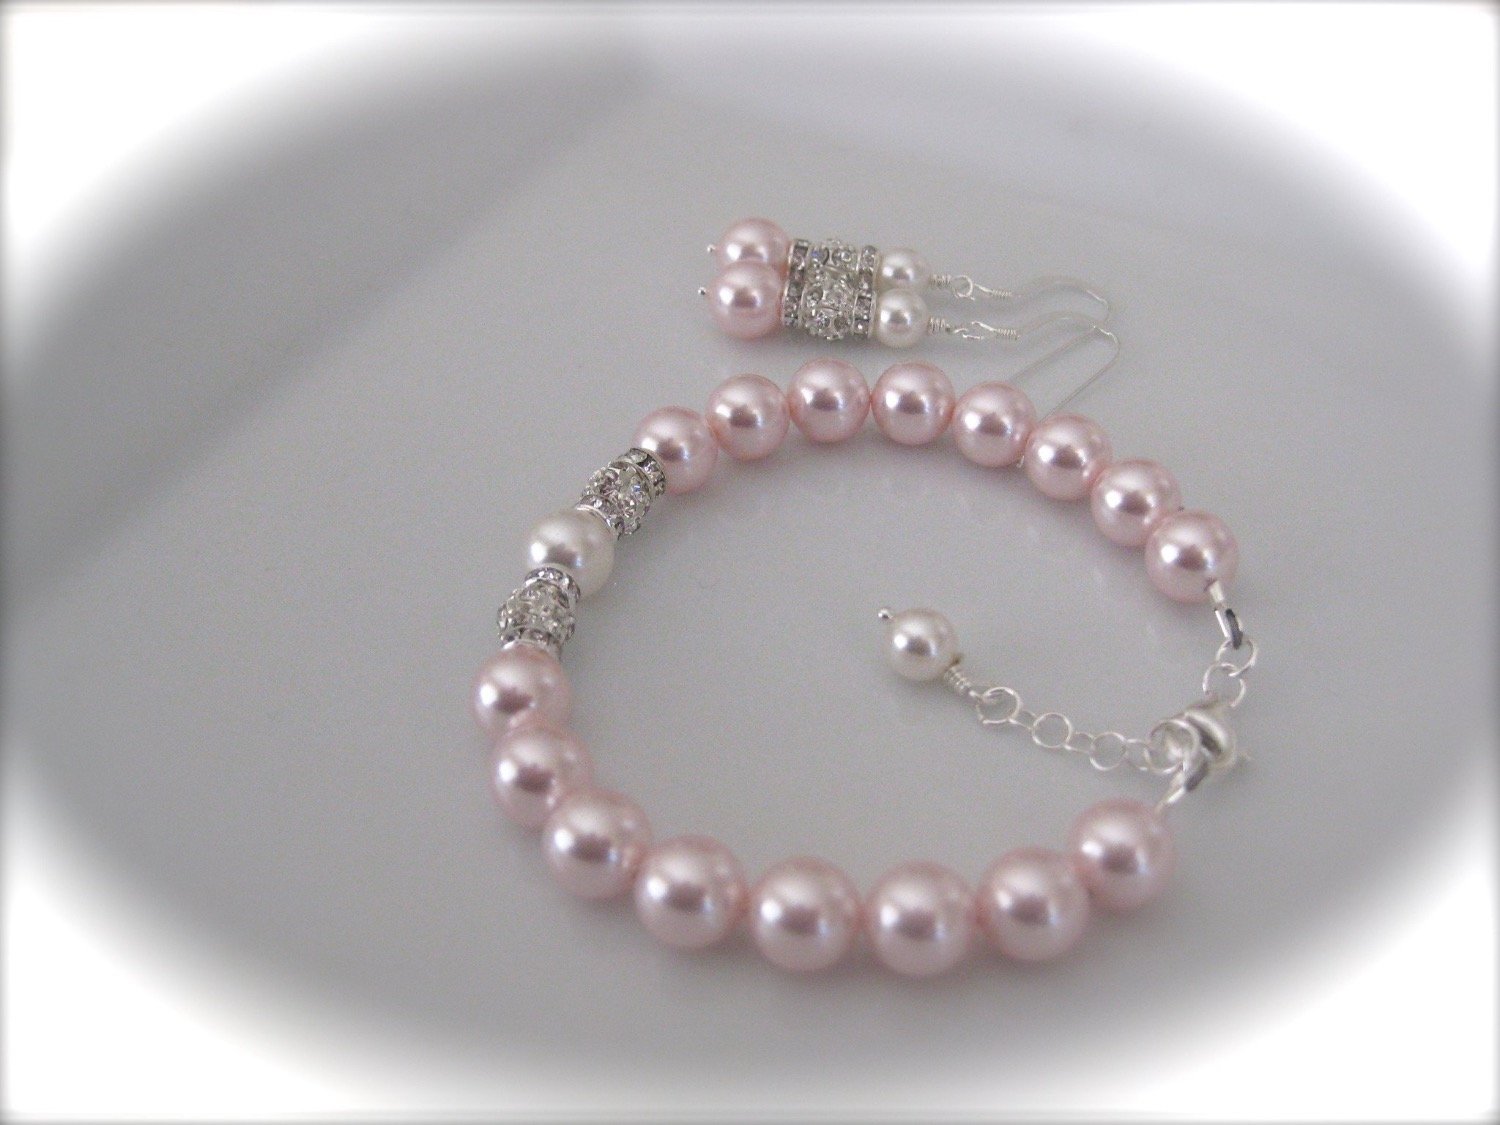 pink pearl bracelet and earrings